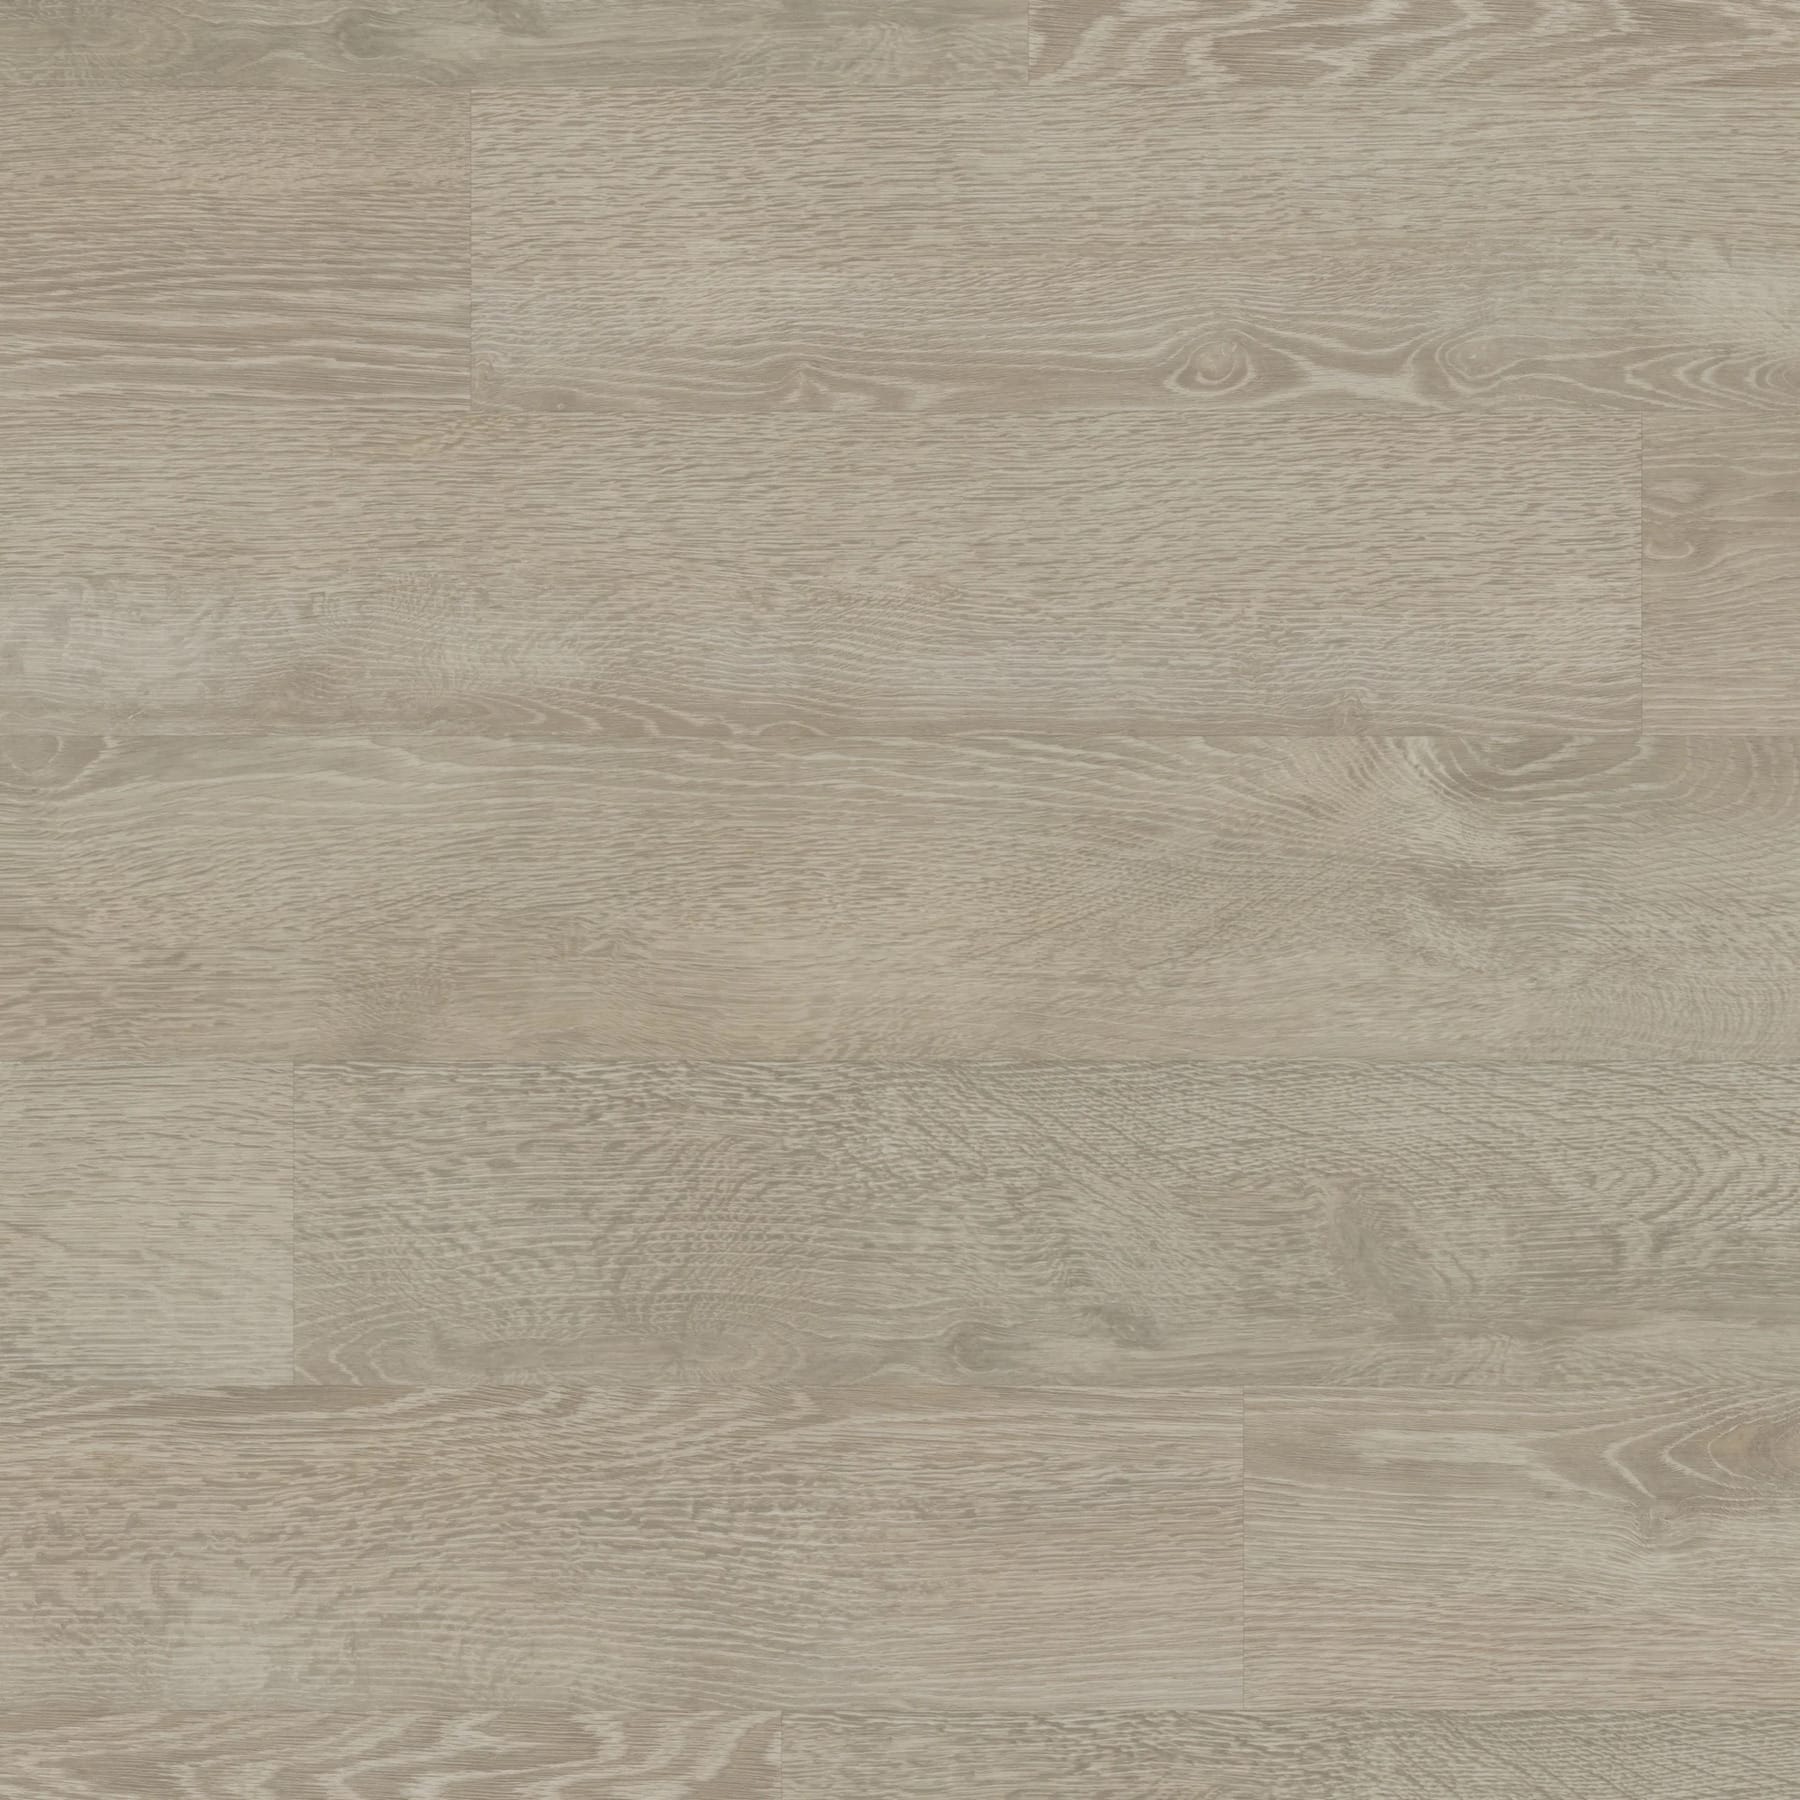 View of VGW110T Greige Oak luxury vinyl tile by Karndean